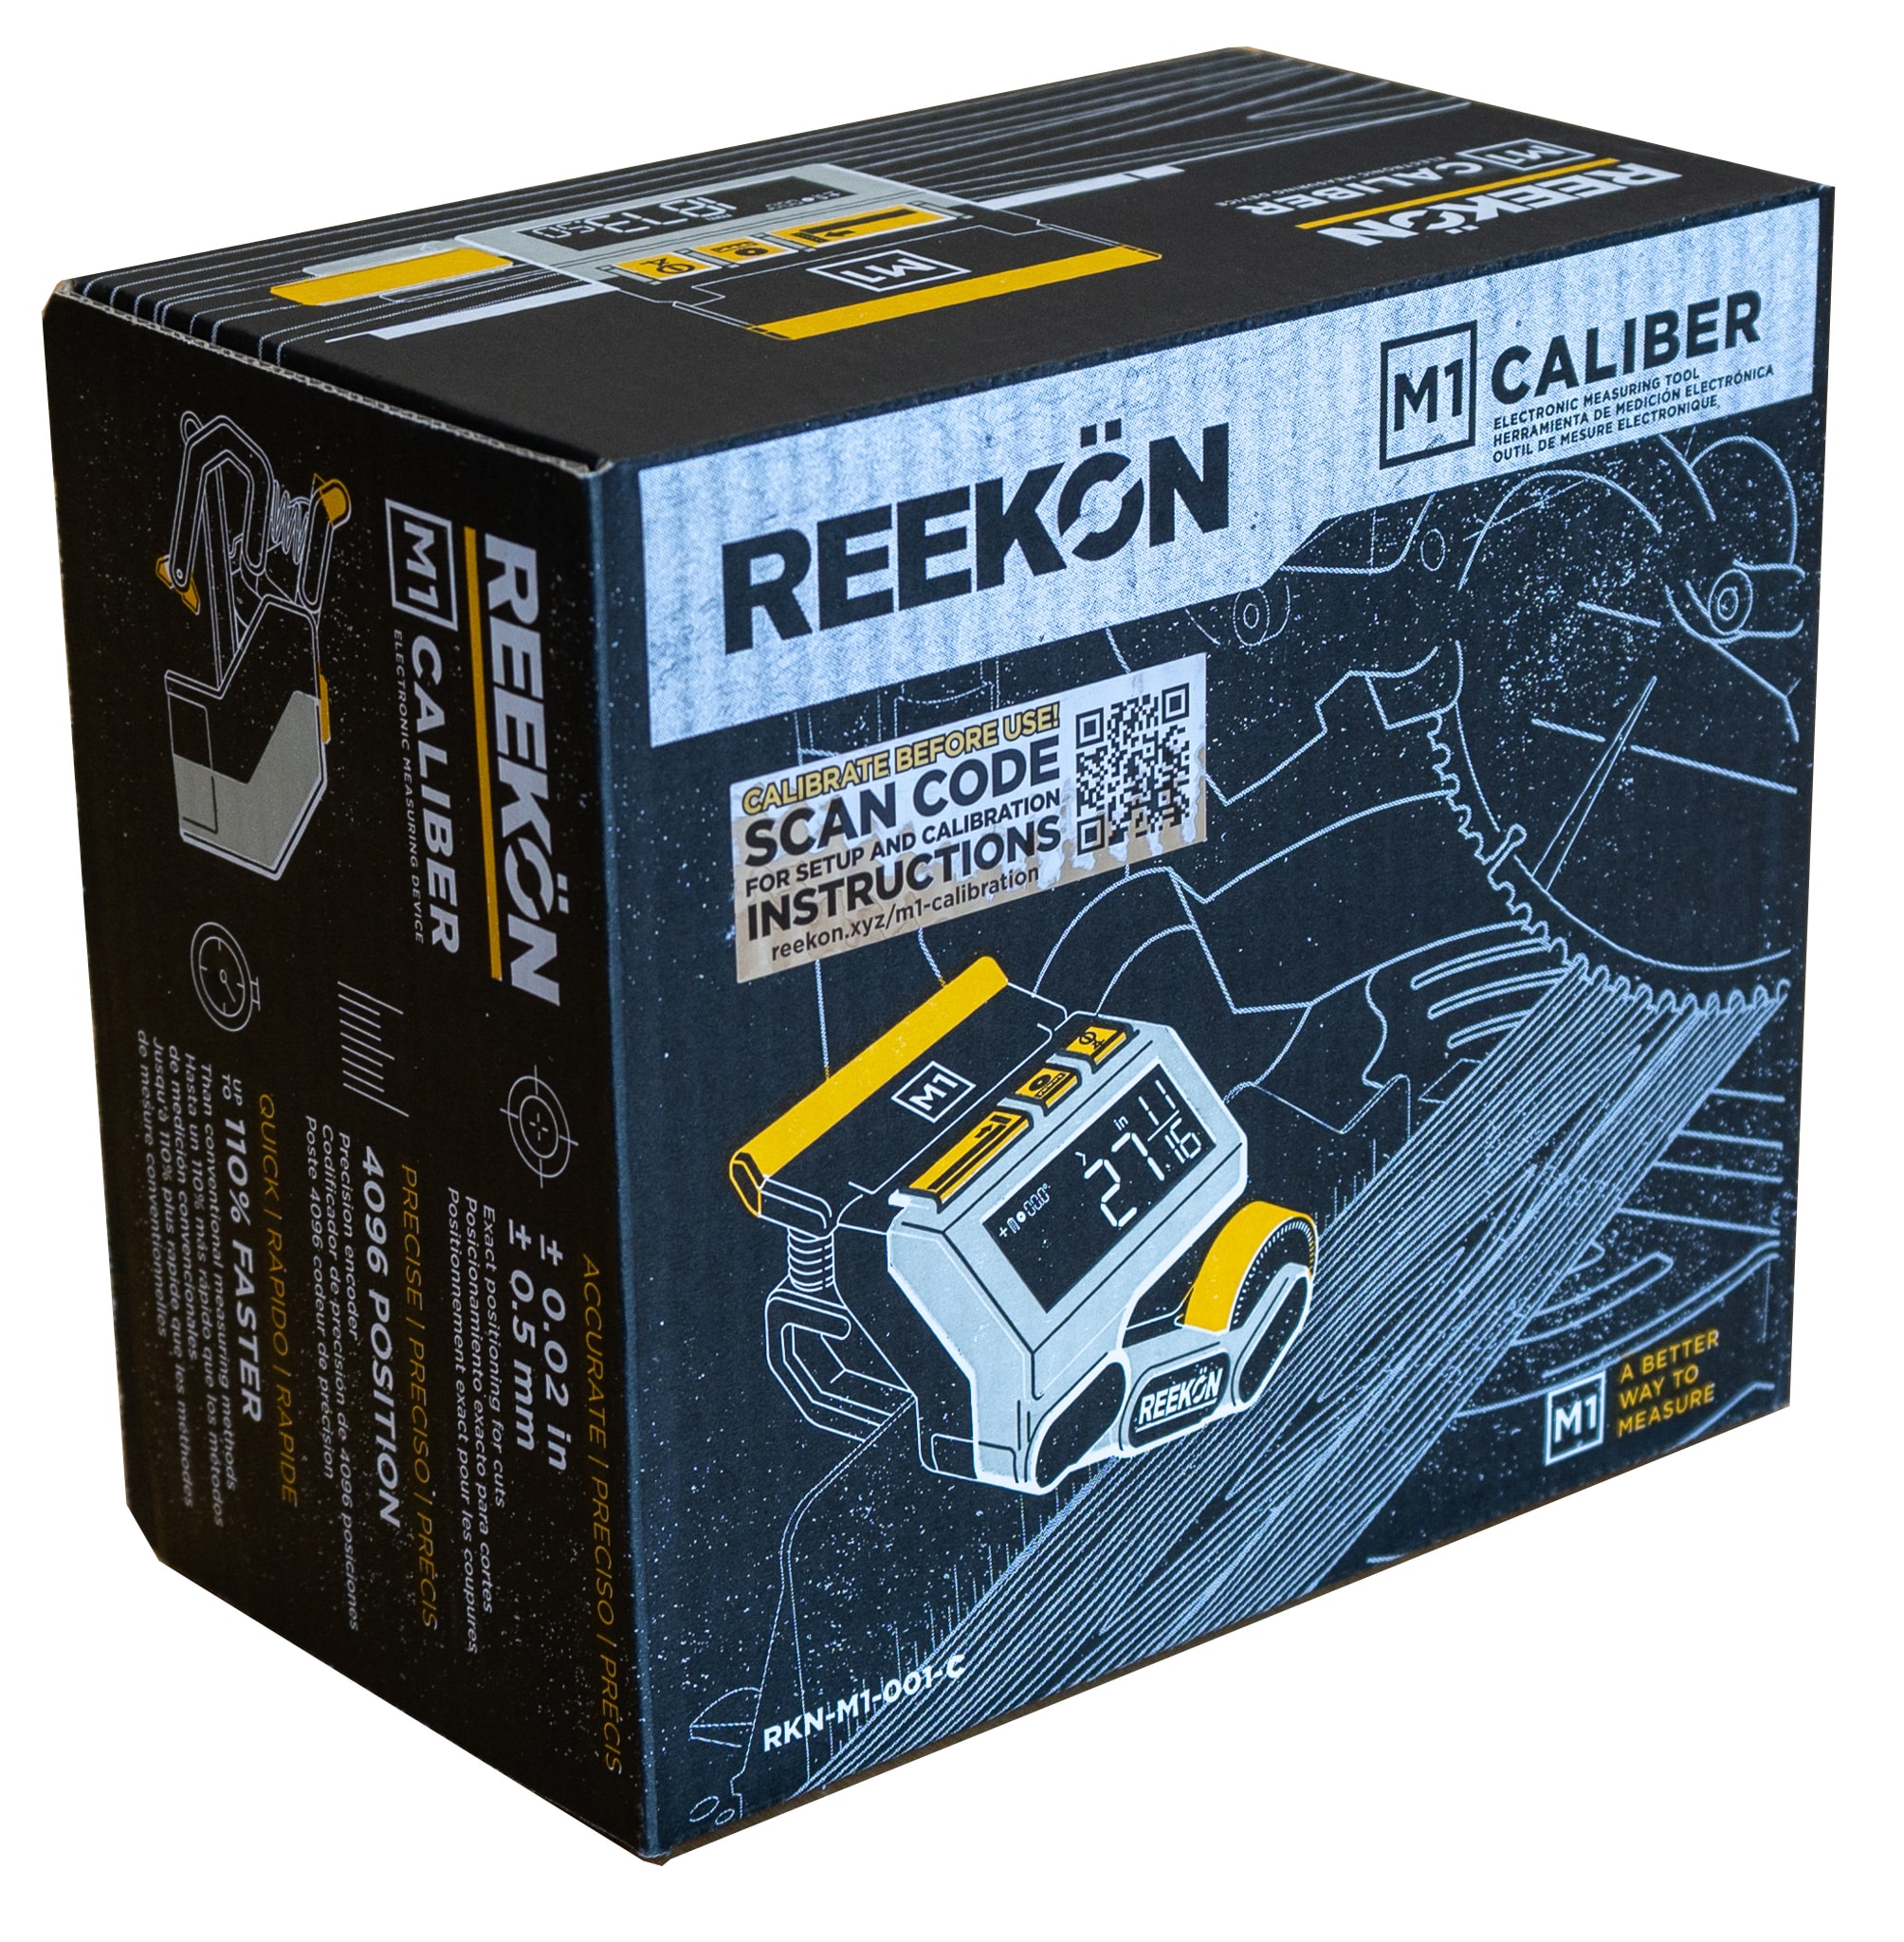 REEKON Tools Digital Tape Measure